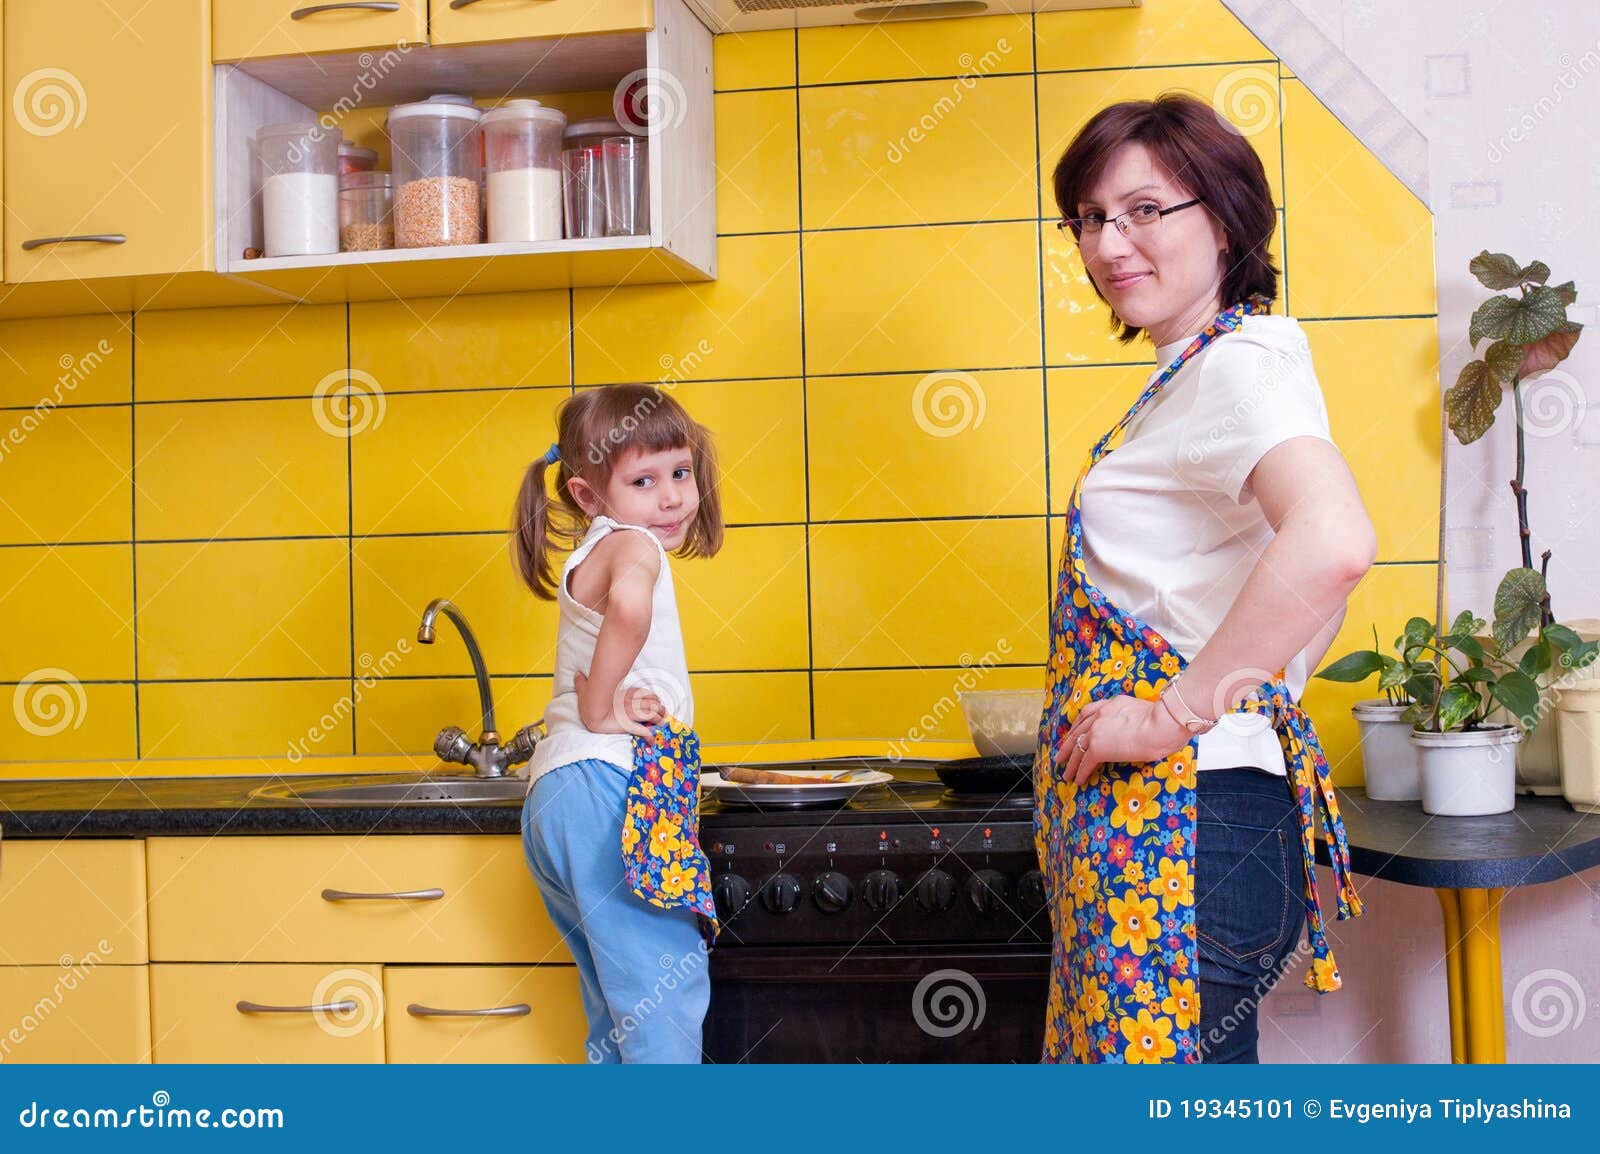 Японская мама на кухне. Мама на кухне. Фотосессия мама и дочка на кухне. Японская мамаша на кухне. Русская мама на кухне сын.